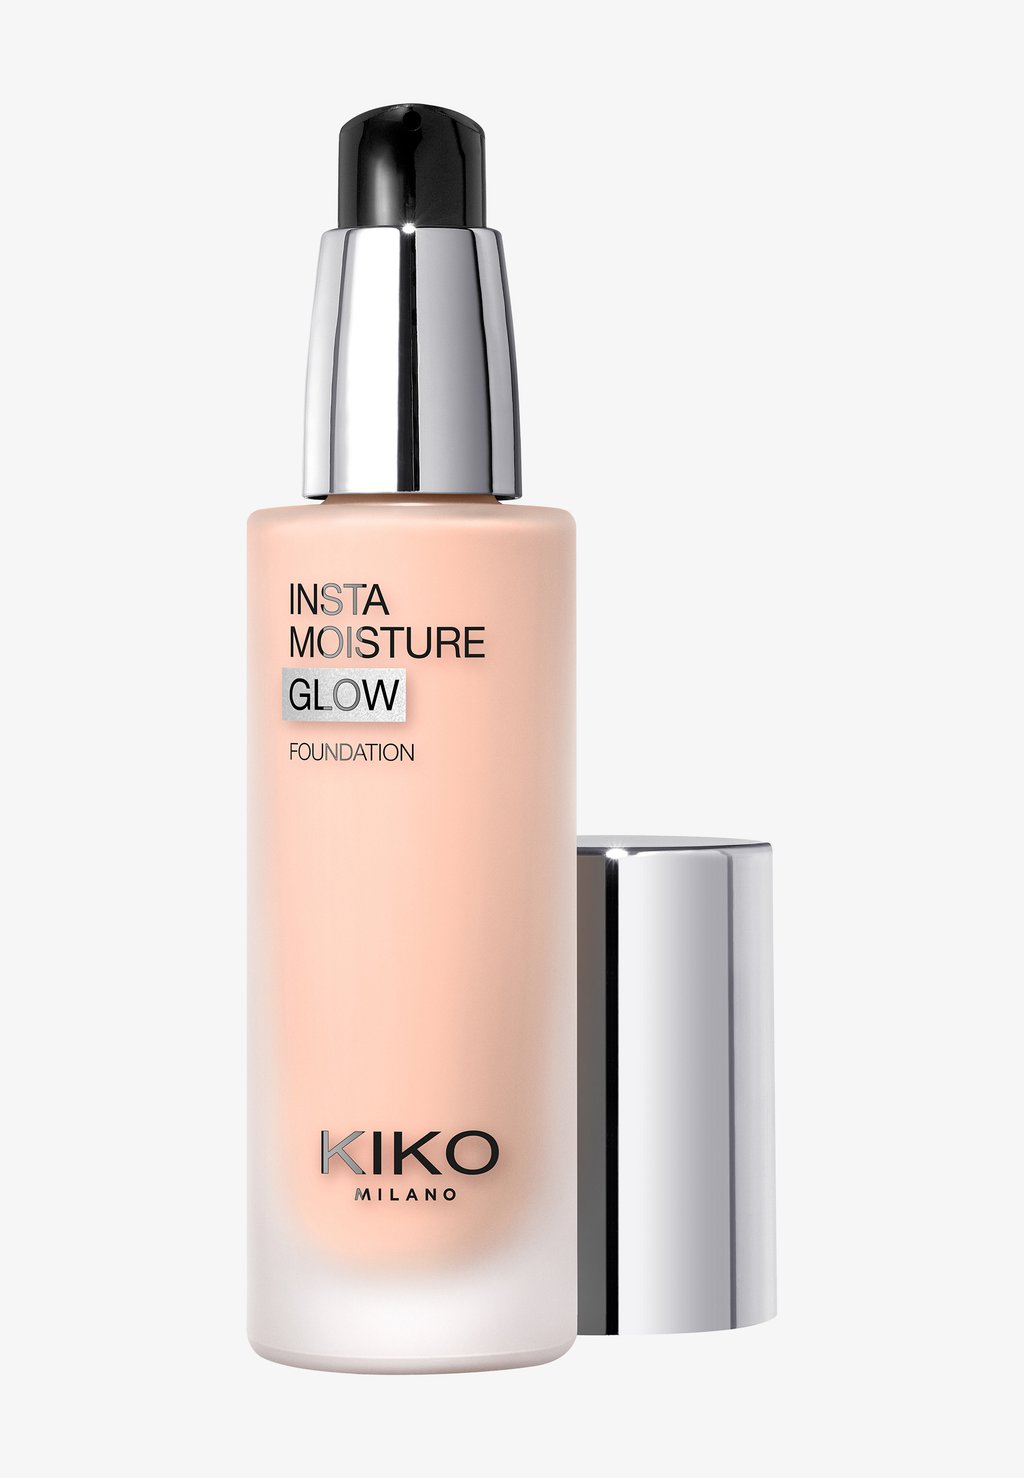 Тональный крем Instamoisture Glow Foundation KIKO Milano, цвет 3 rose